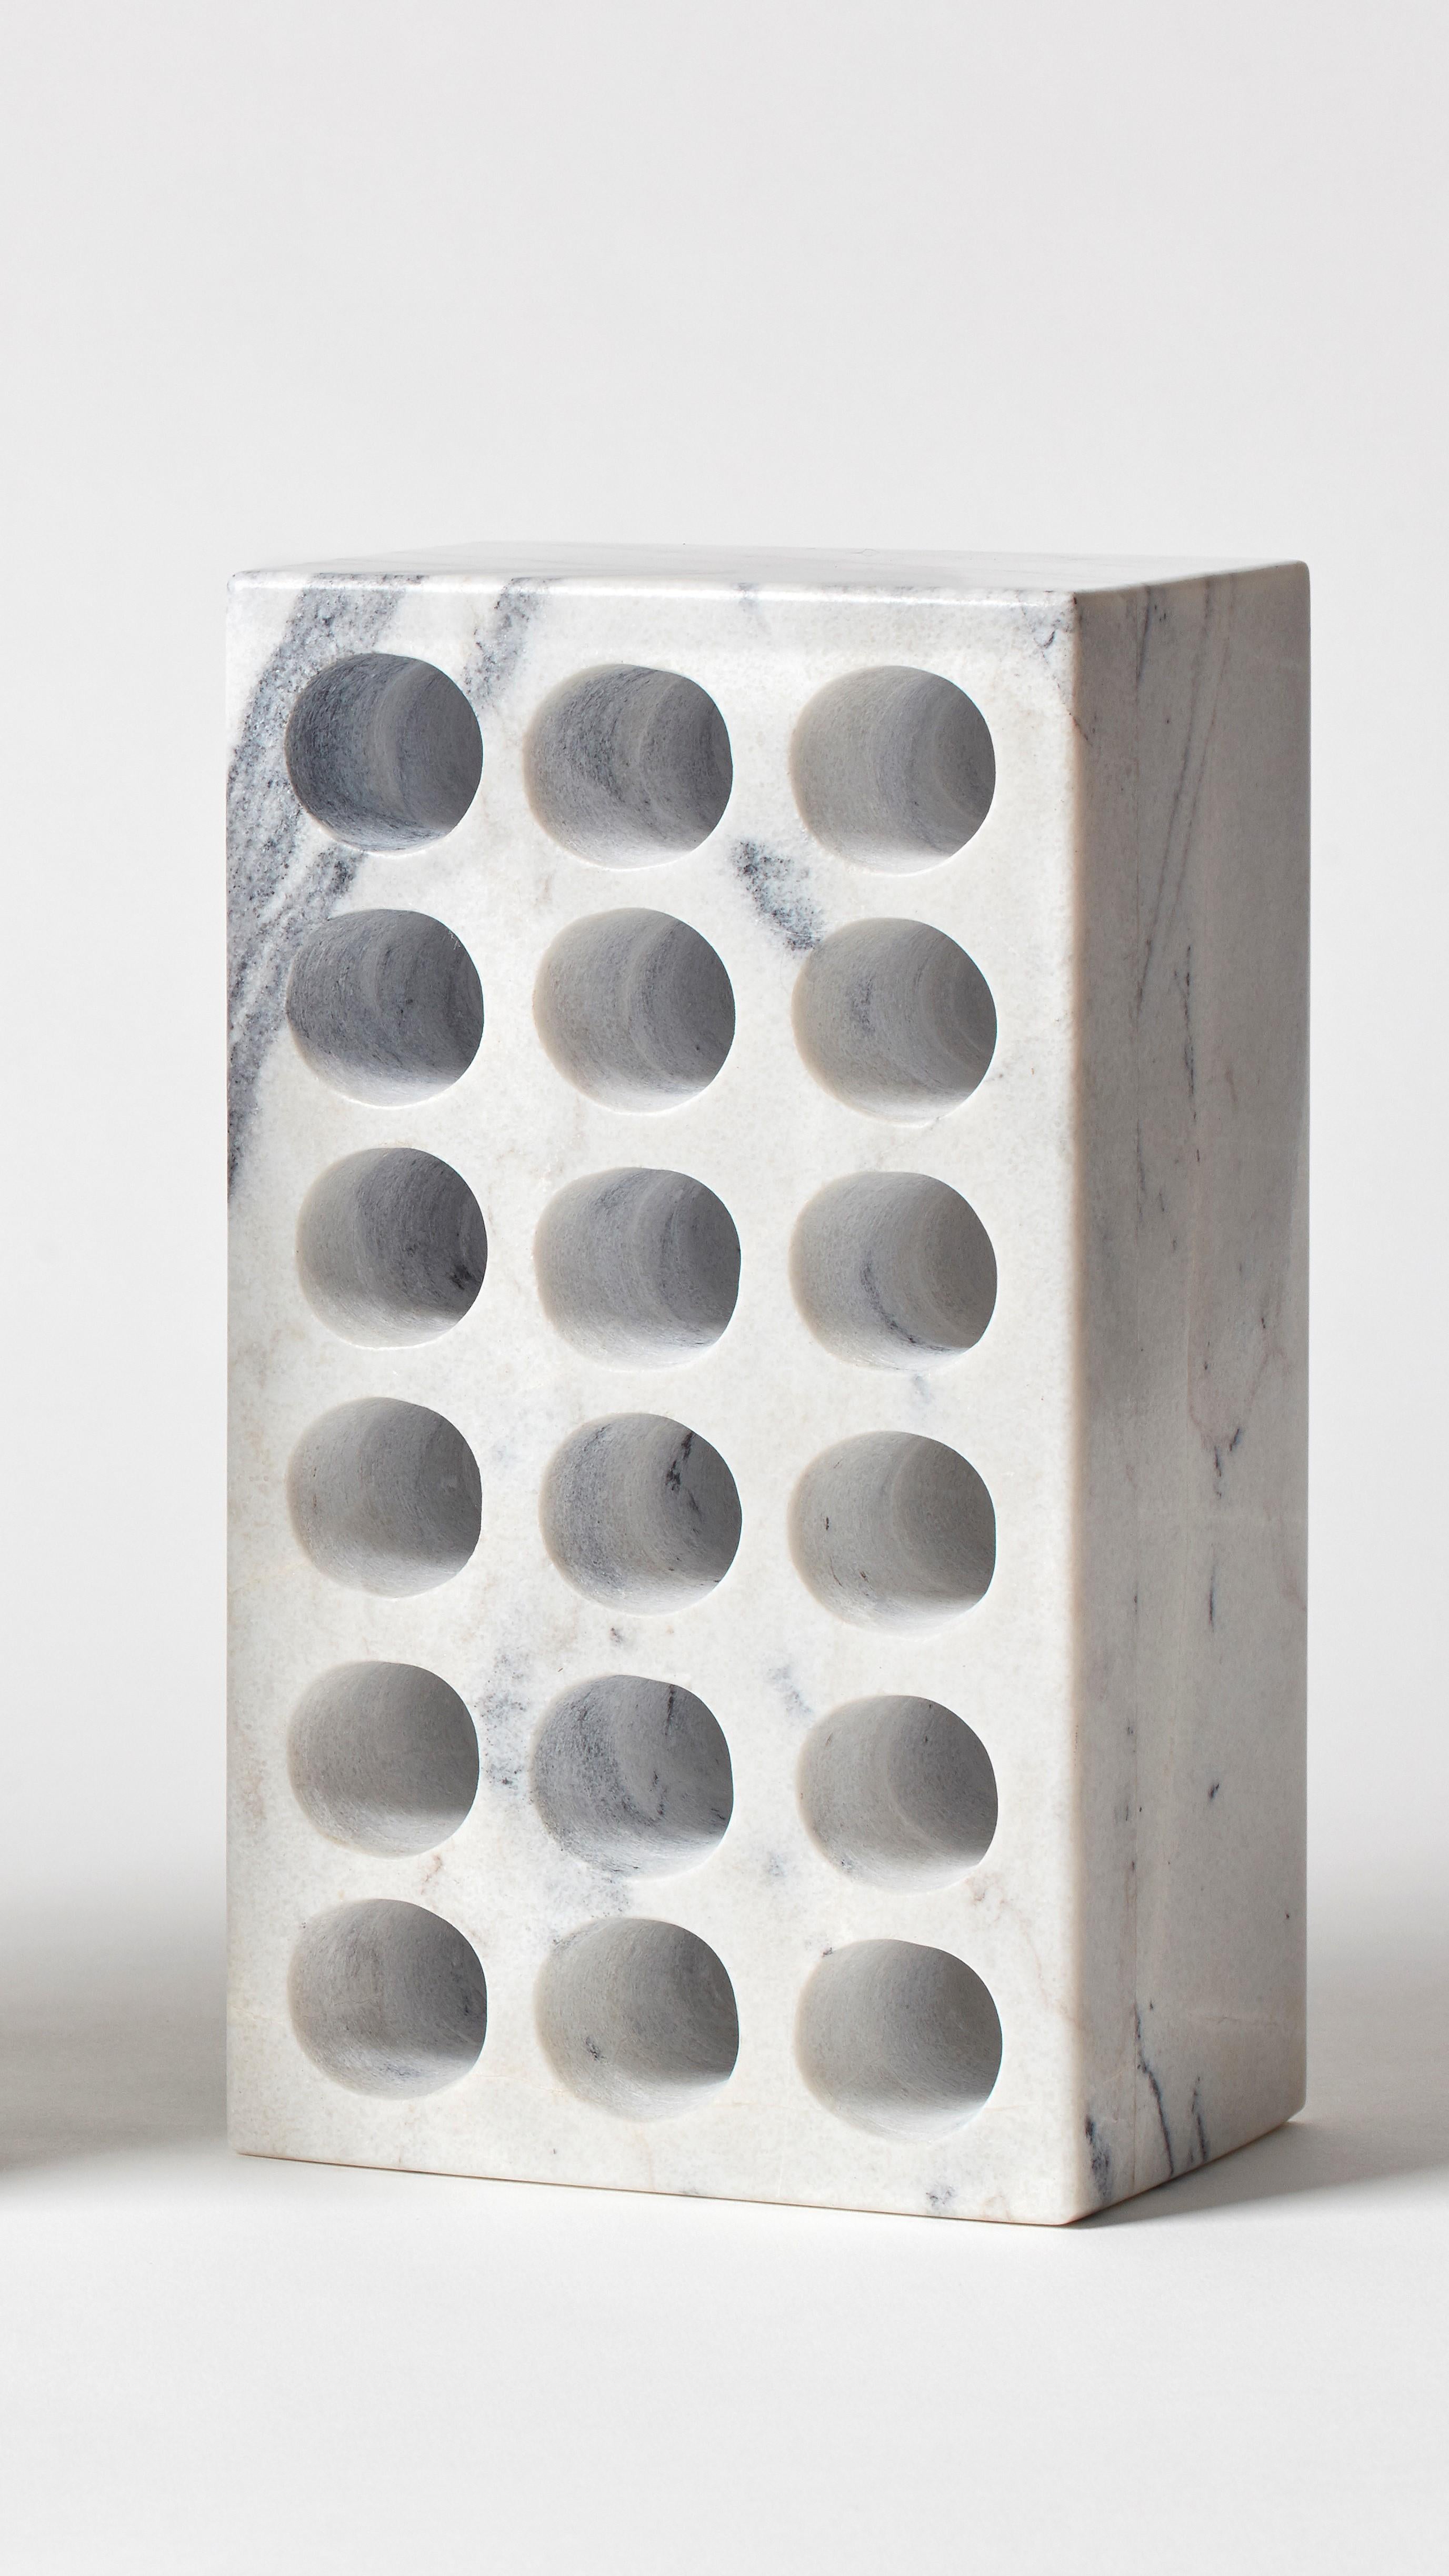 Ziegelstein von Estudio Rafael Freyre
Abmessungen: B 12,5 T 9 x H 23 cm 
MATERIALIEN: Anden-Steine
Auch erhältlich: andere Ausführungen.

Der Ziegelstein ist ein allgemeines konstruktives Element, das Teil des städtischen Imaginären ist. In Peru ist